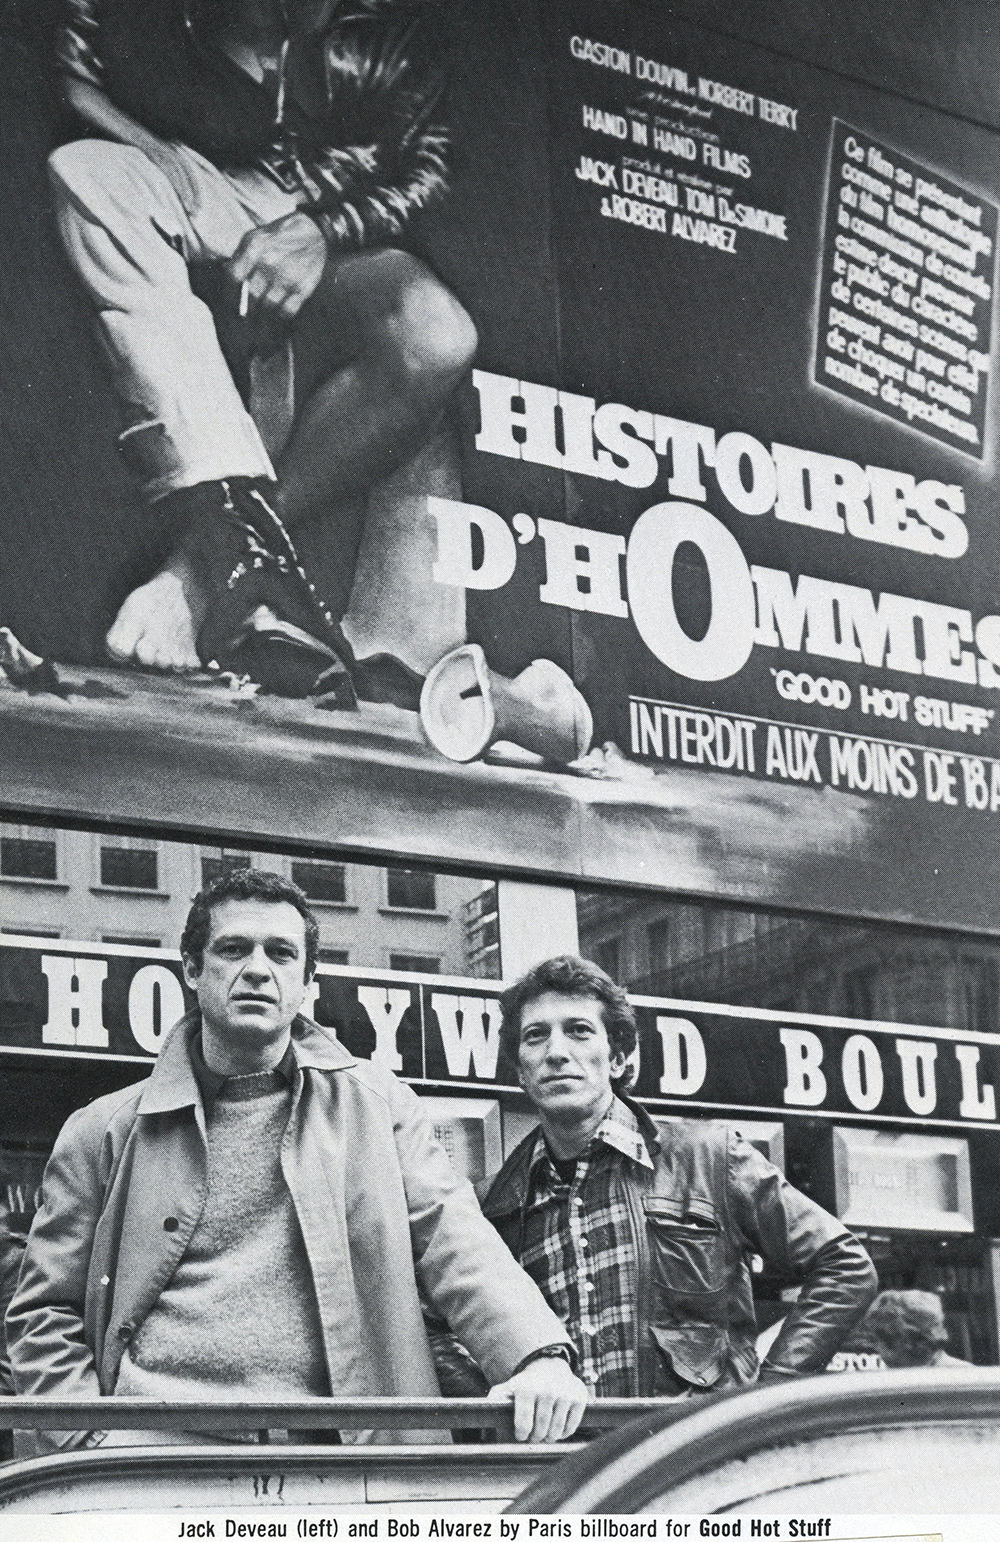 Jack and Robert Alvarez in front of a Histoires d'Hommes billboard in Paris